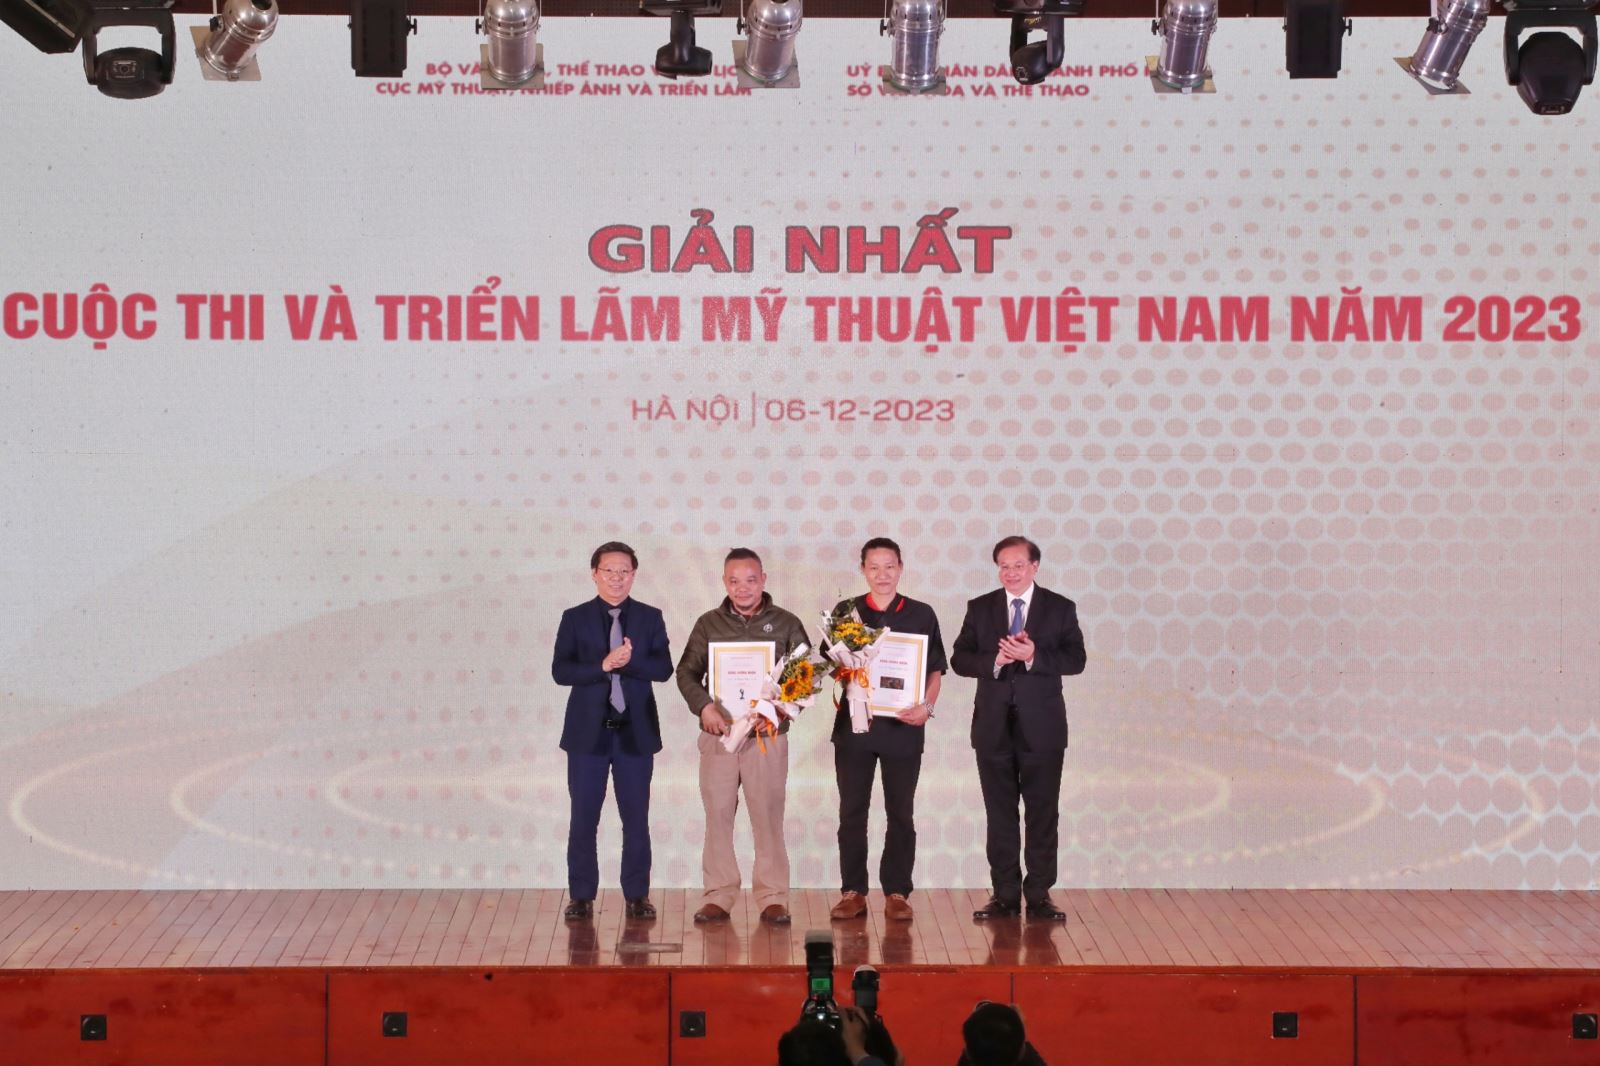 Khai mạc và trao giải thưởng Cuộc thi và Triển lãm Mỹ thuật Việt Nam năm 2023